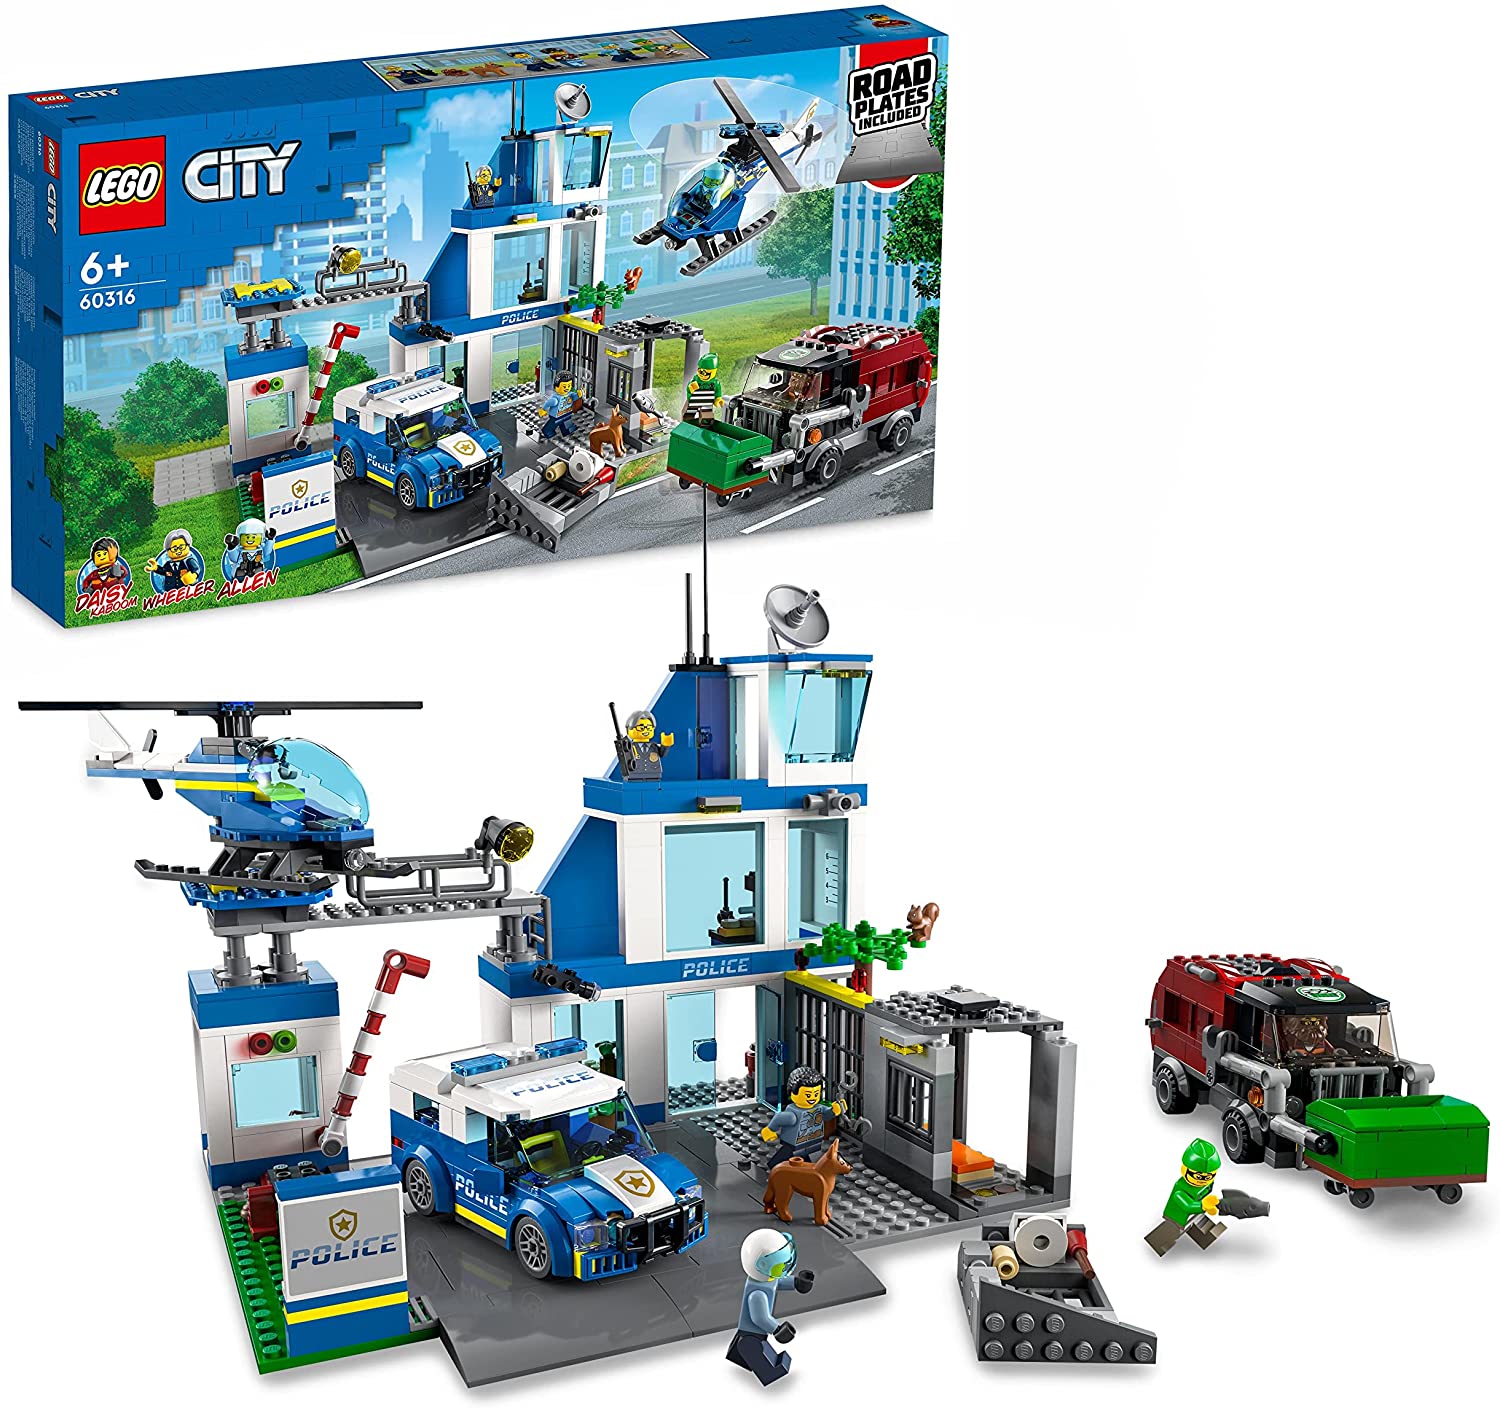 LEGO 60316 City Polizeistation mit Polizeiauto, Müllauto und Hubschrauber, 